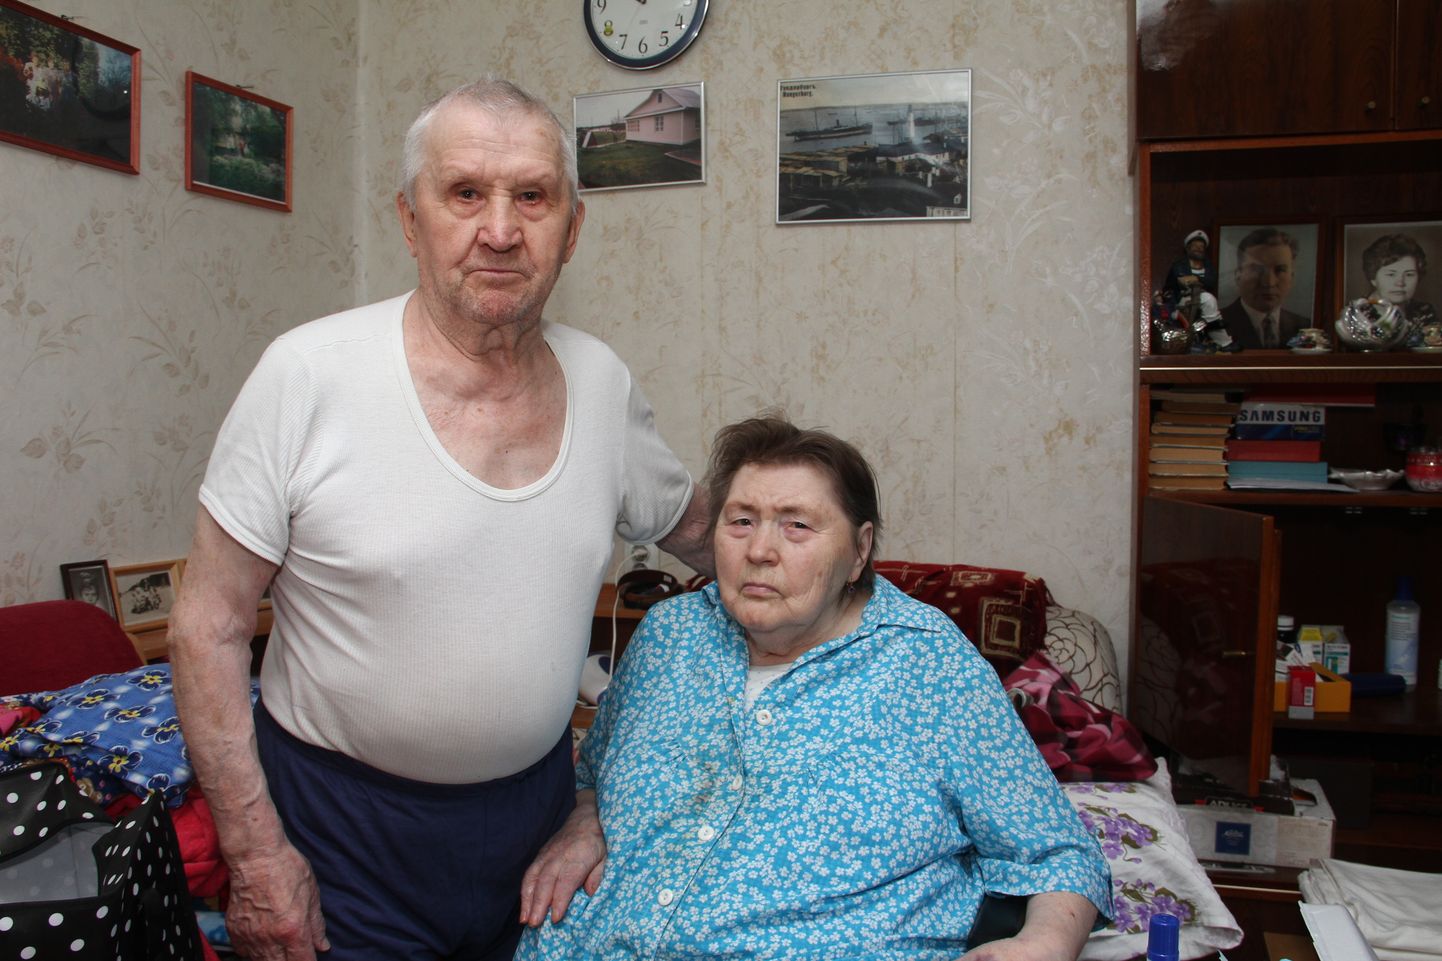 Пенсионер из Усть-Нарвы Валентин в свои 87 лет бодр и продолжает помогать супруге, которая теперь почти не встает с кровати.